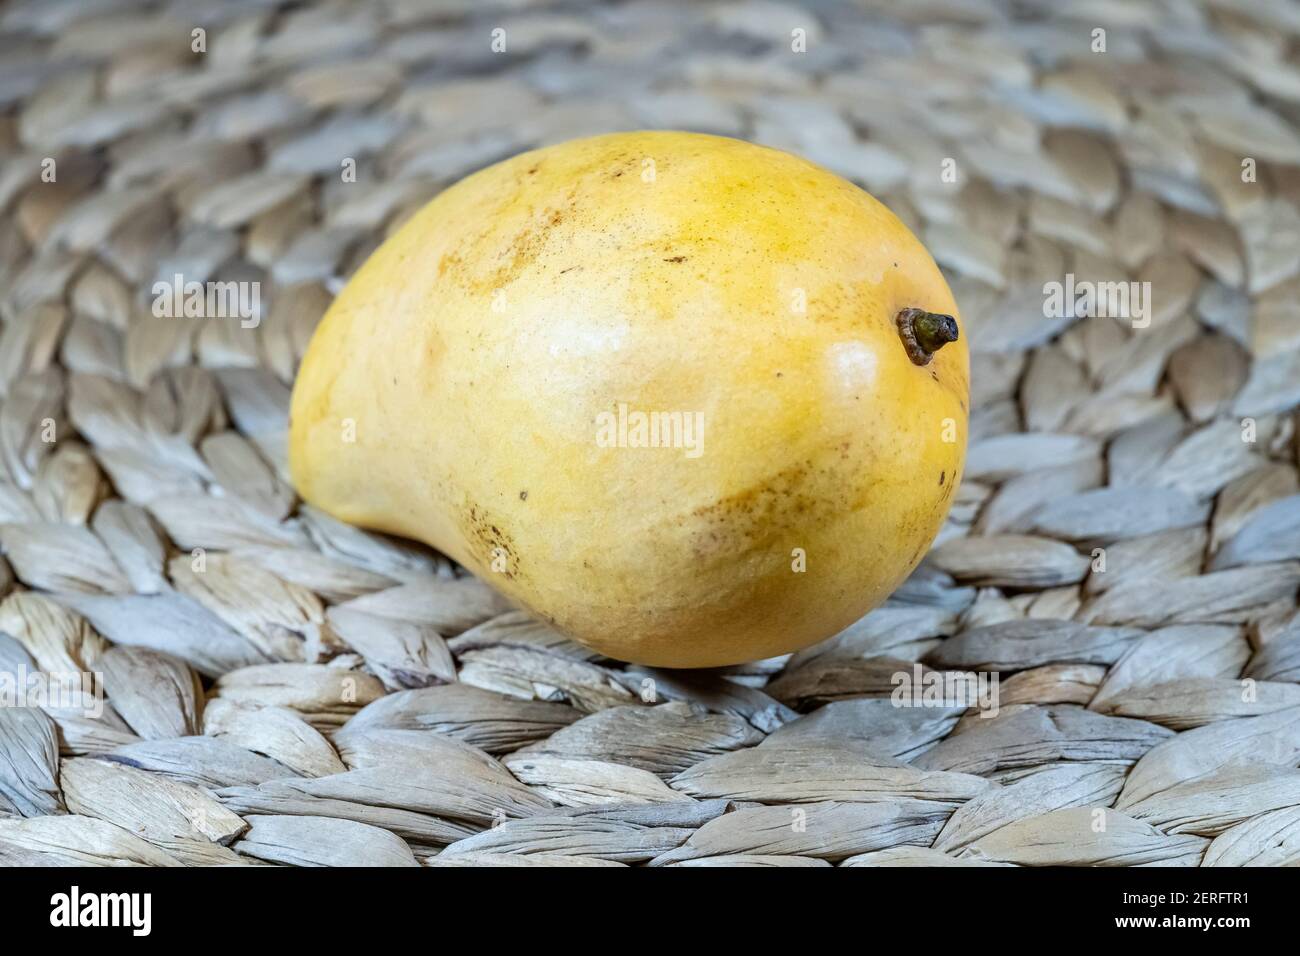 La mangue 'Ataúlfo', aussi appelée jeune, bébé, jaune, miel, Adaulfo, Adolfo ou Champagne[1] est un cultivar de mangue du Mexique. Banque D'Images